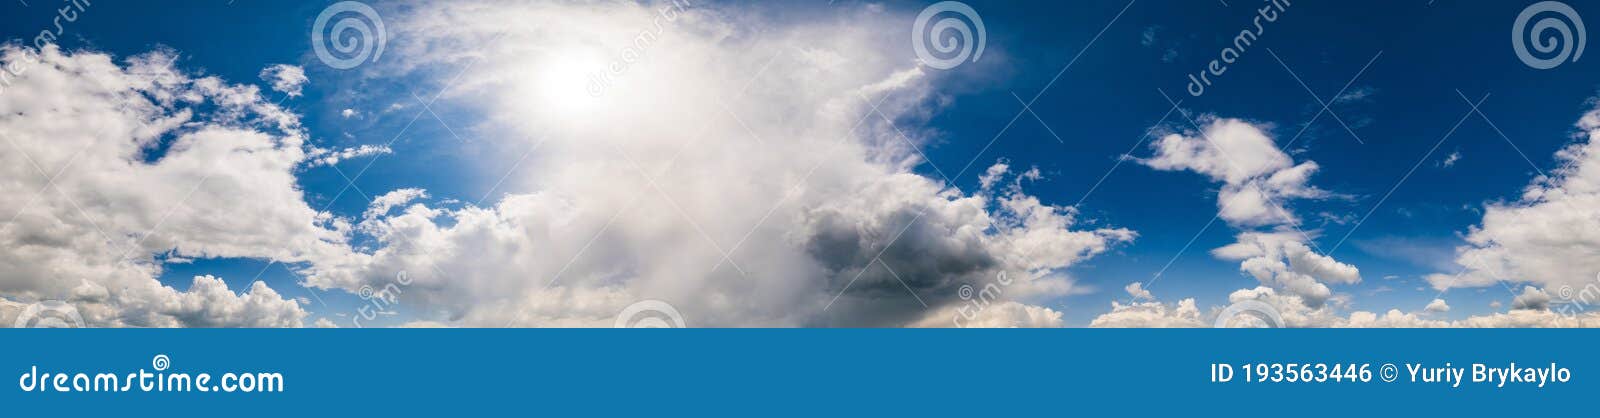 Blue Sky, high resolution, panoramic background: Cảm nhận bầu trời xanh ngắt mênh mông, thẳng tắp và rộng lớn với hình ảnh nền hùng vĩ này. Được chụp với độ phân giải cao và rộng mở, các chi tiết nhỏ sẽ được tái hiện một cách chân thật nhất, giúp bạn chìm đắm trong không gian này mà không thể rời mắt được.